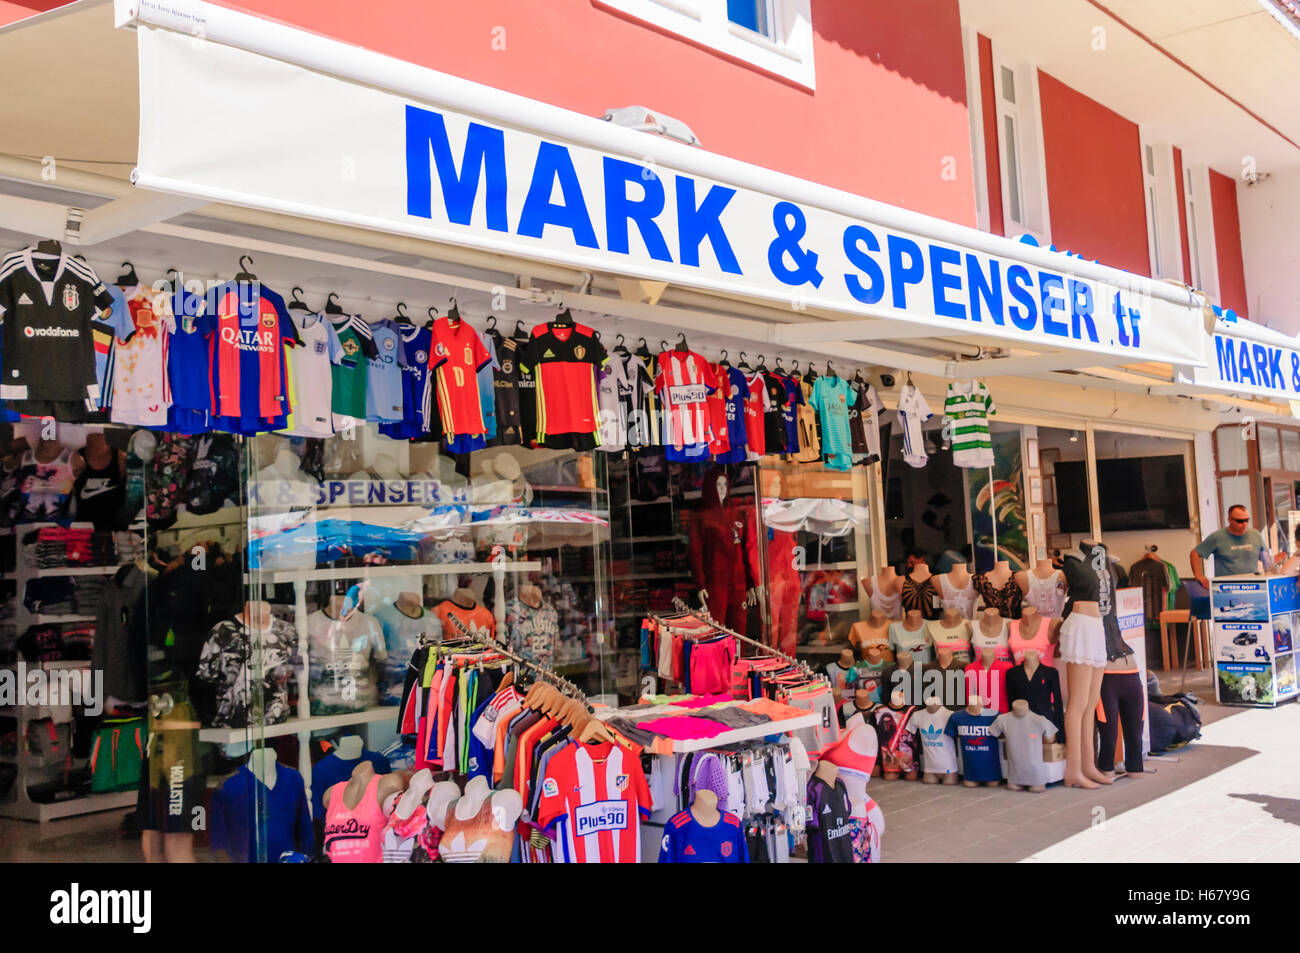 Clothese negozio di vendita di merci contraffatte si chiama Mark & Spenser in Turchia. Foto Stock